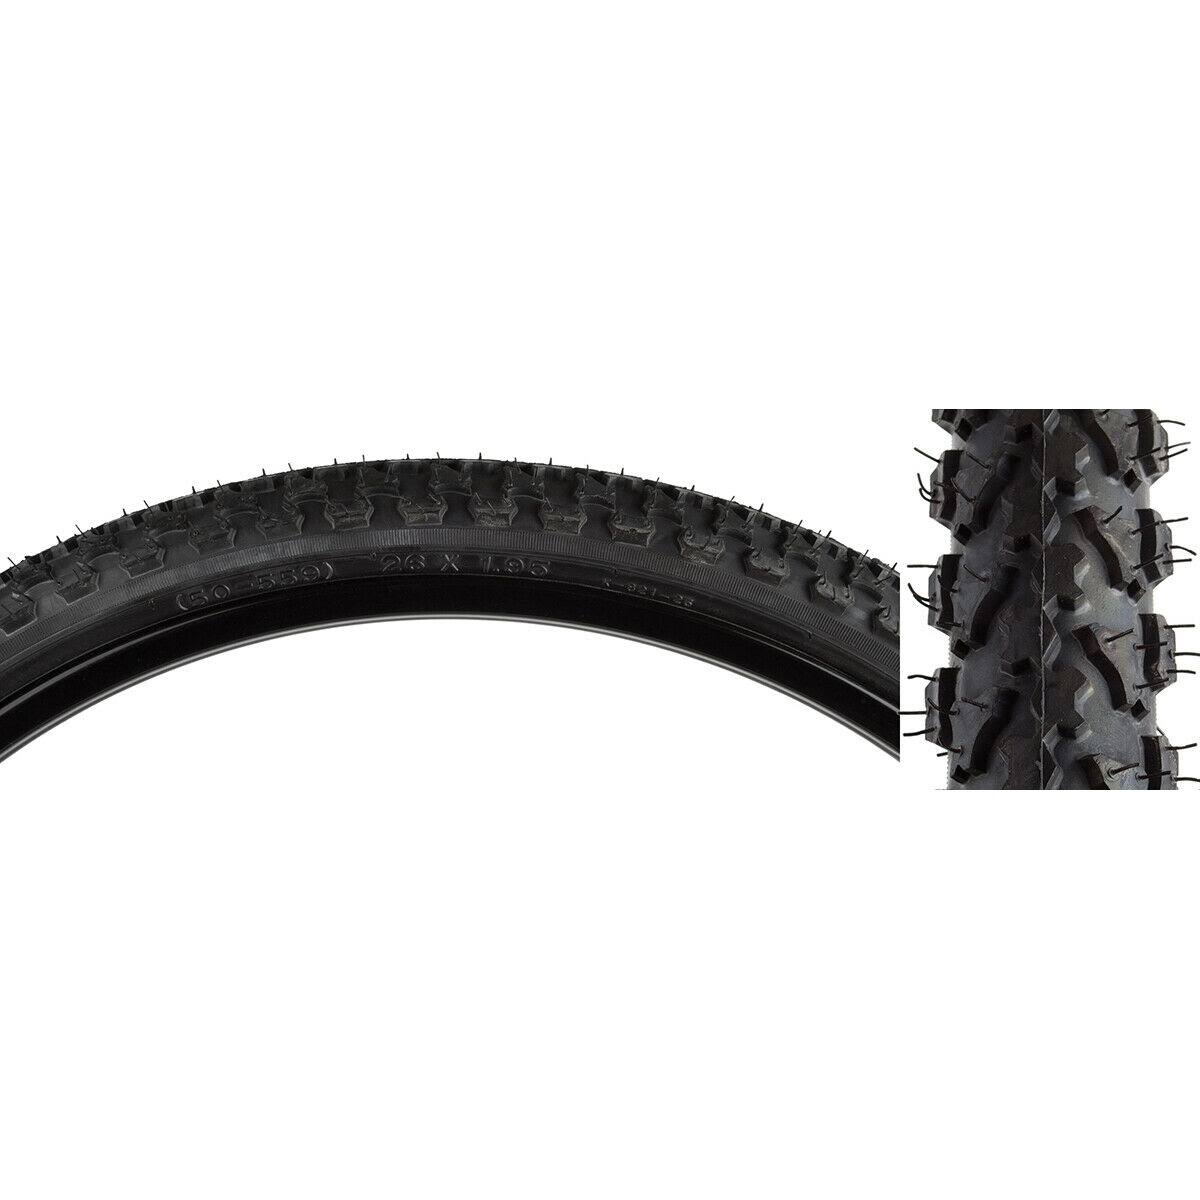 Sunlite Mod Quad MTB Tires, 26 x 1.95, Black/Black